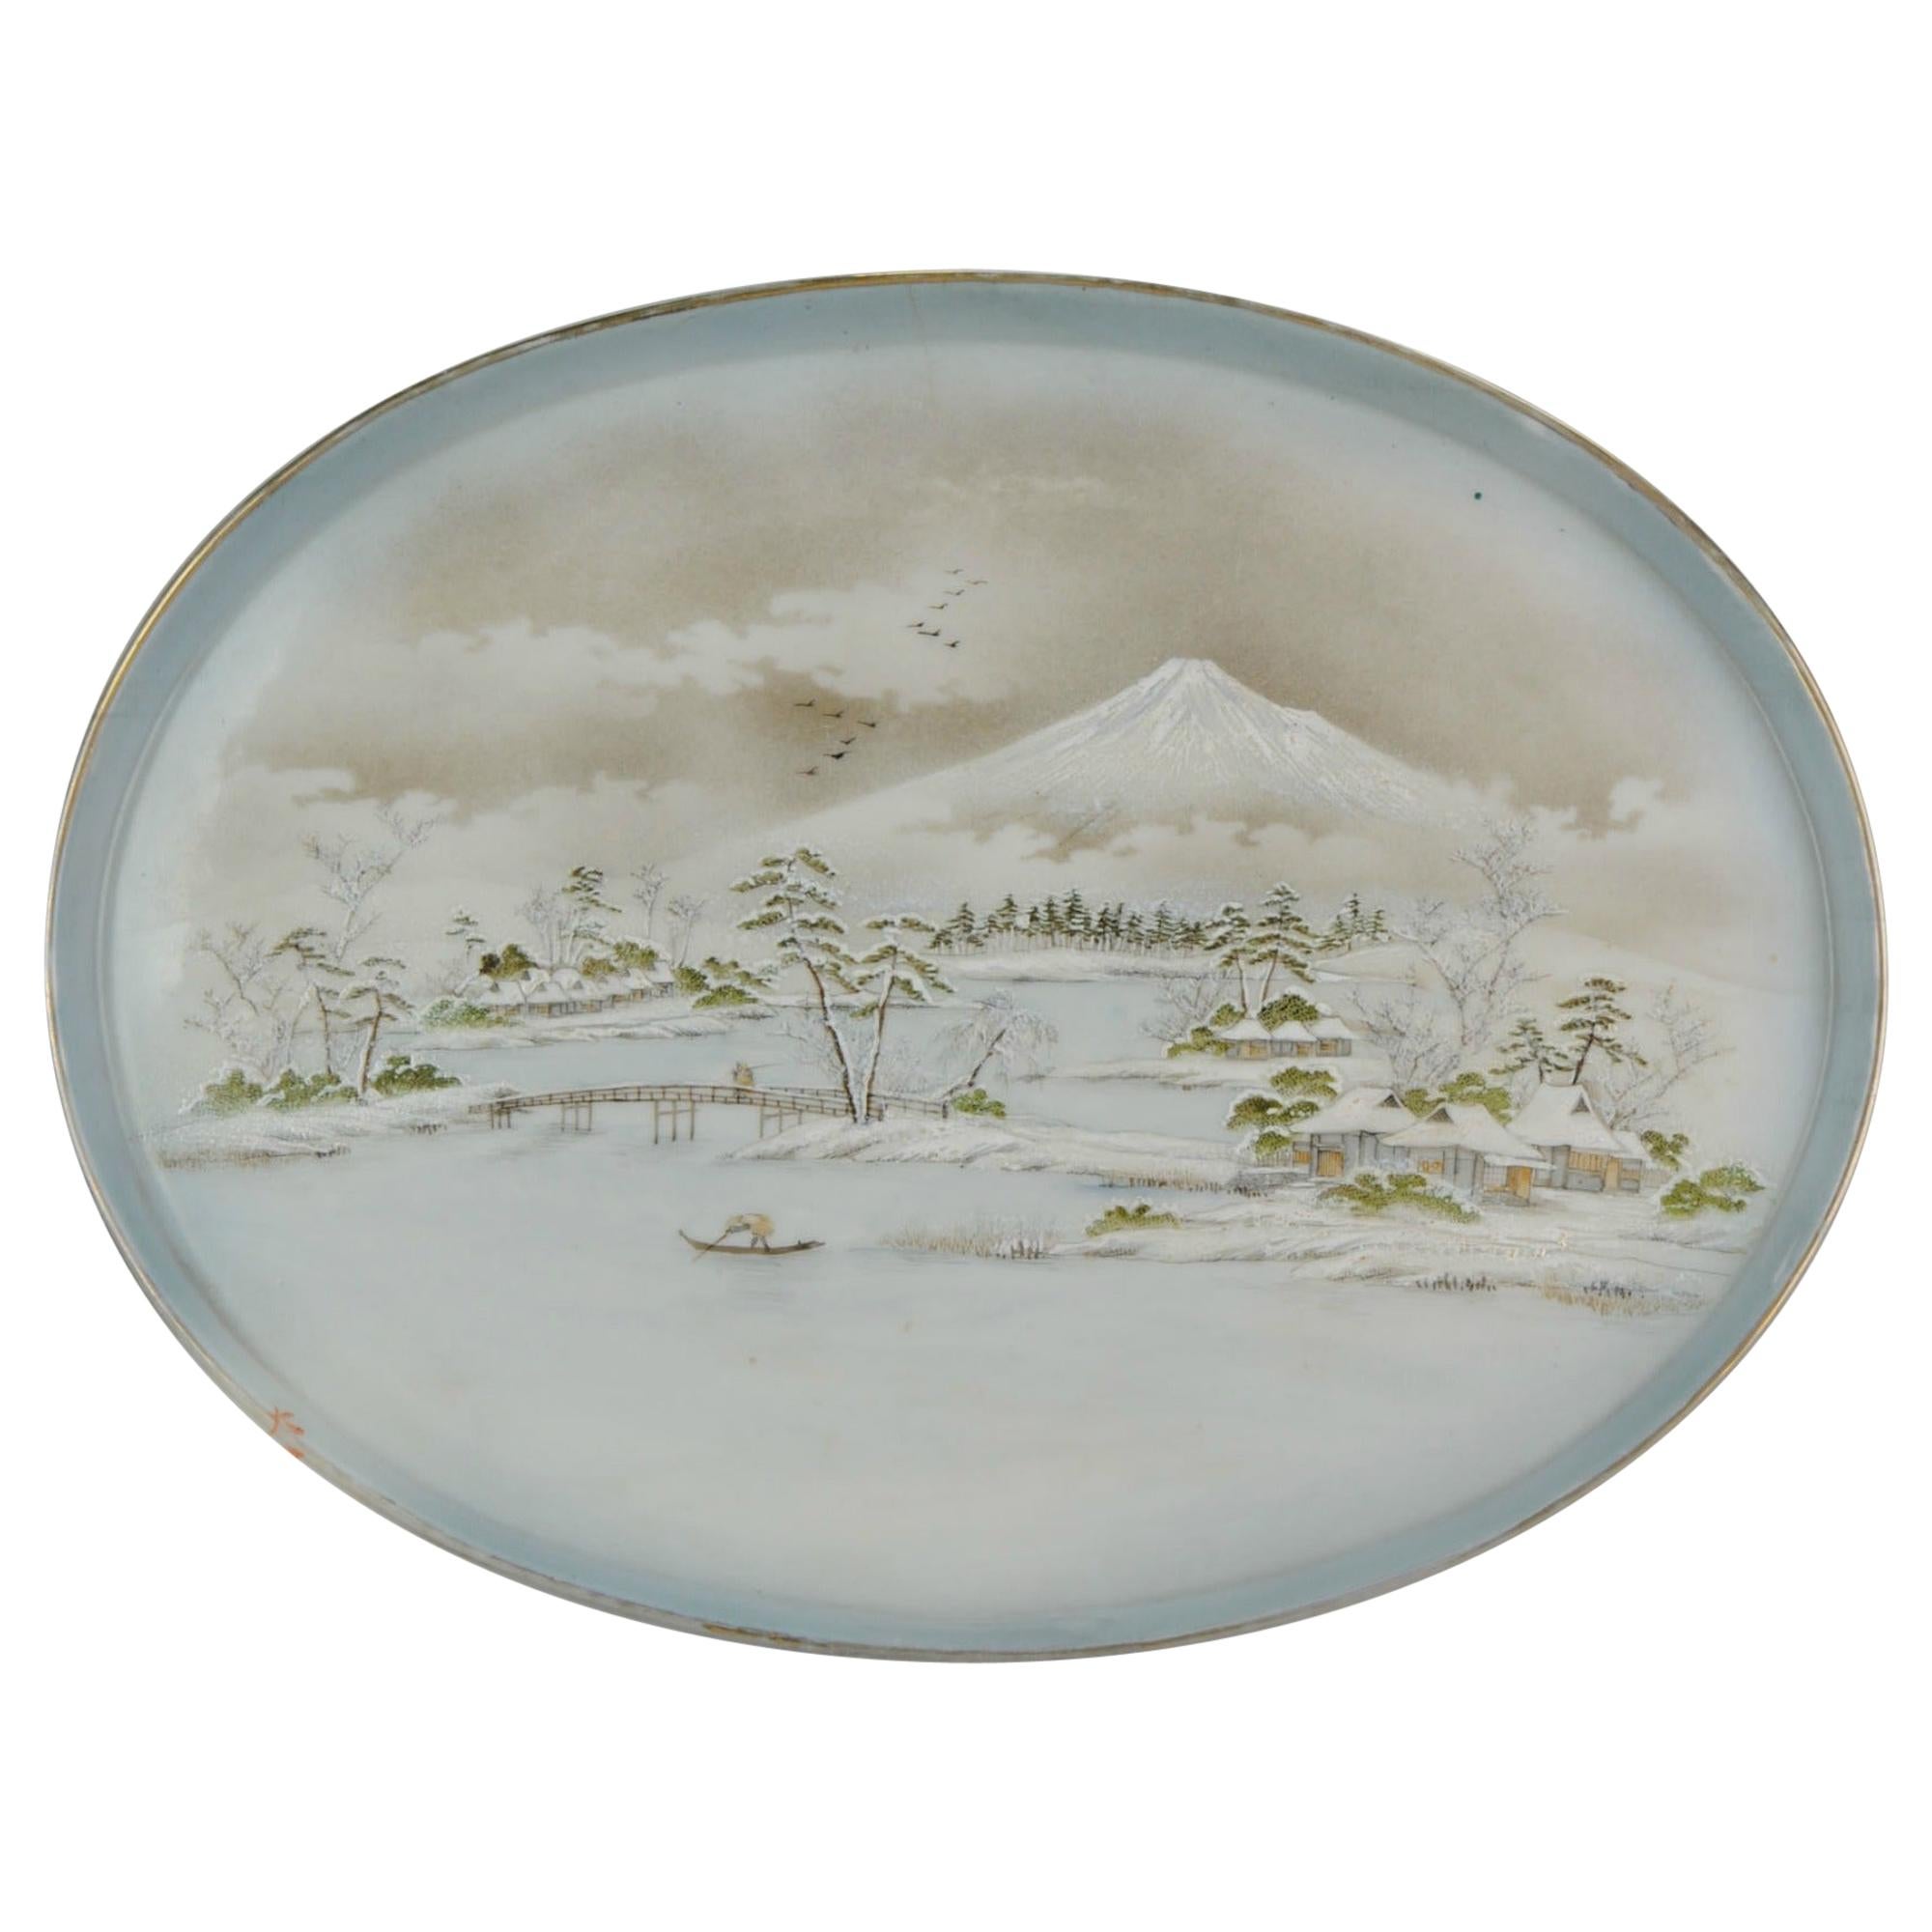 Assiette de présentation Meiji Taisho en porcelaine japonaise du 20ème siècle marquée Paysage Fuji